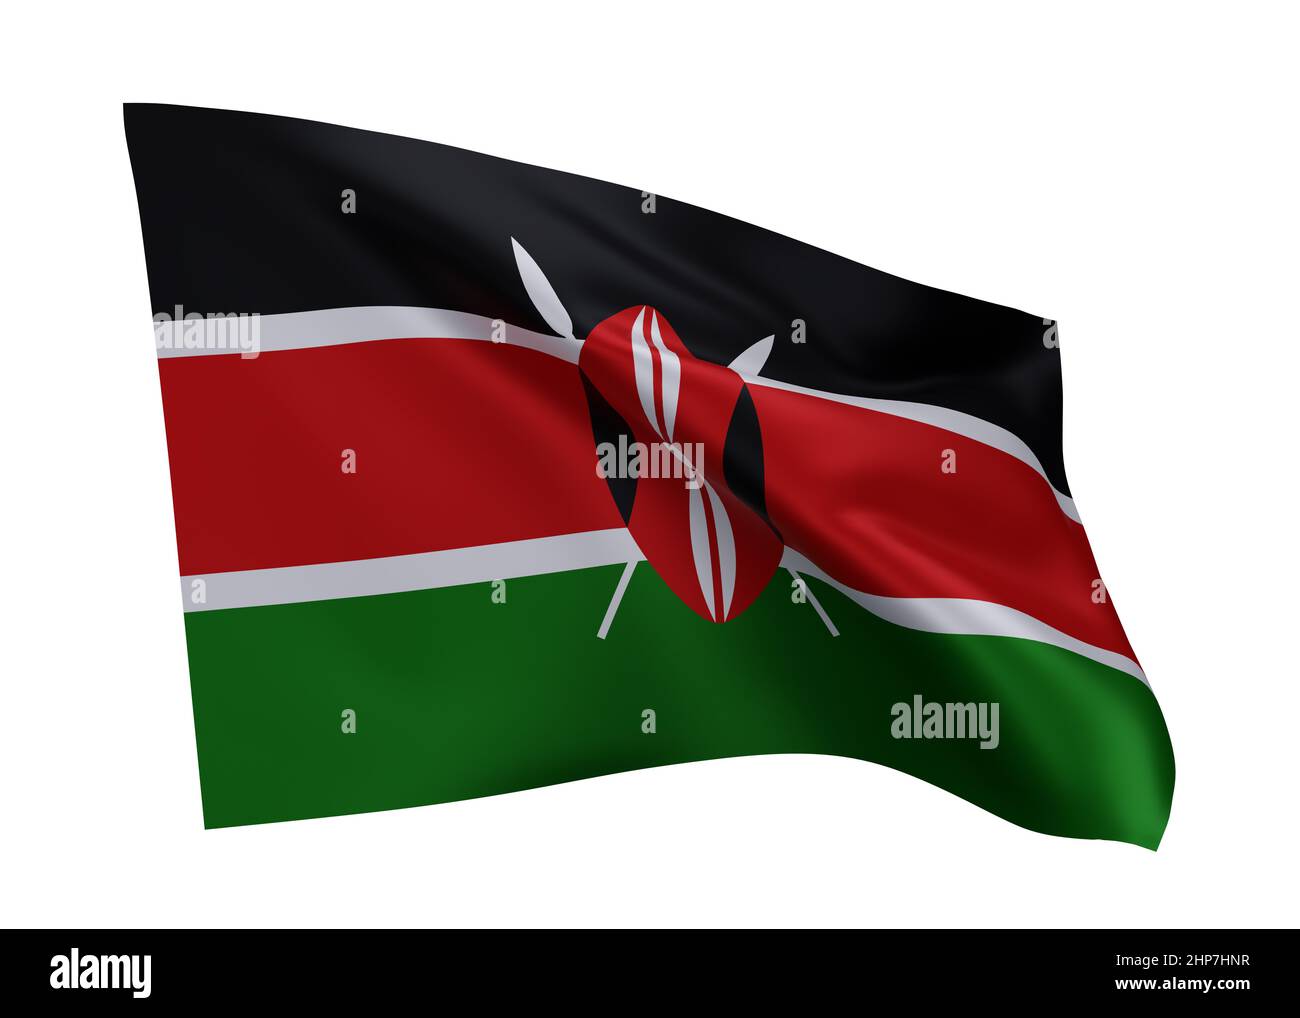 3d illustration flag of Kenya. Kenyan high resolution flag isolated against white background. 3d rendering Stock Photo